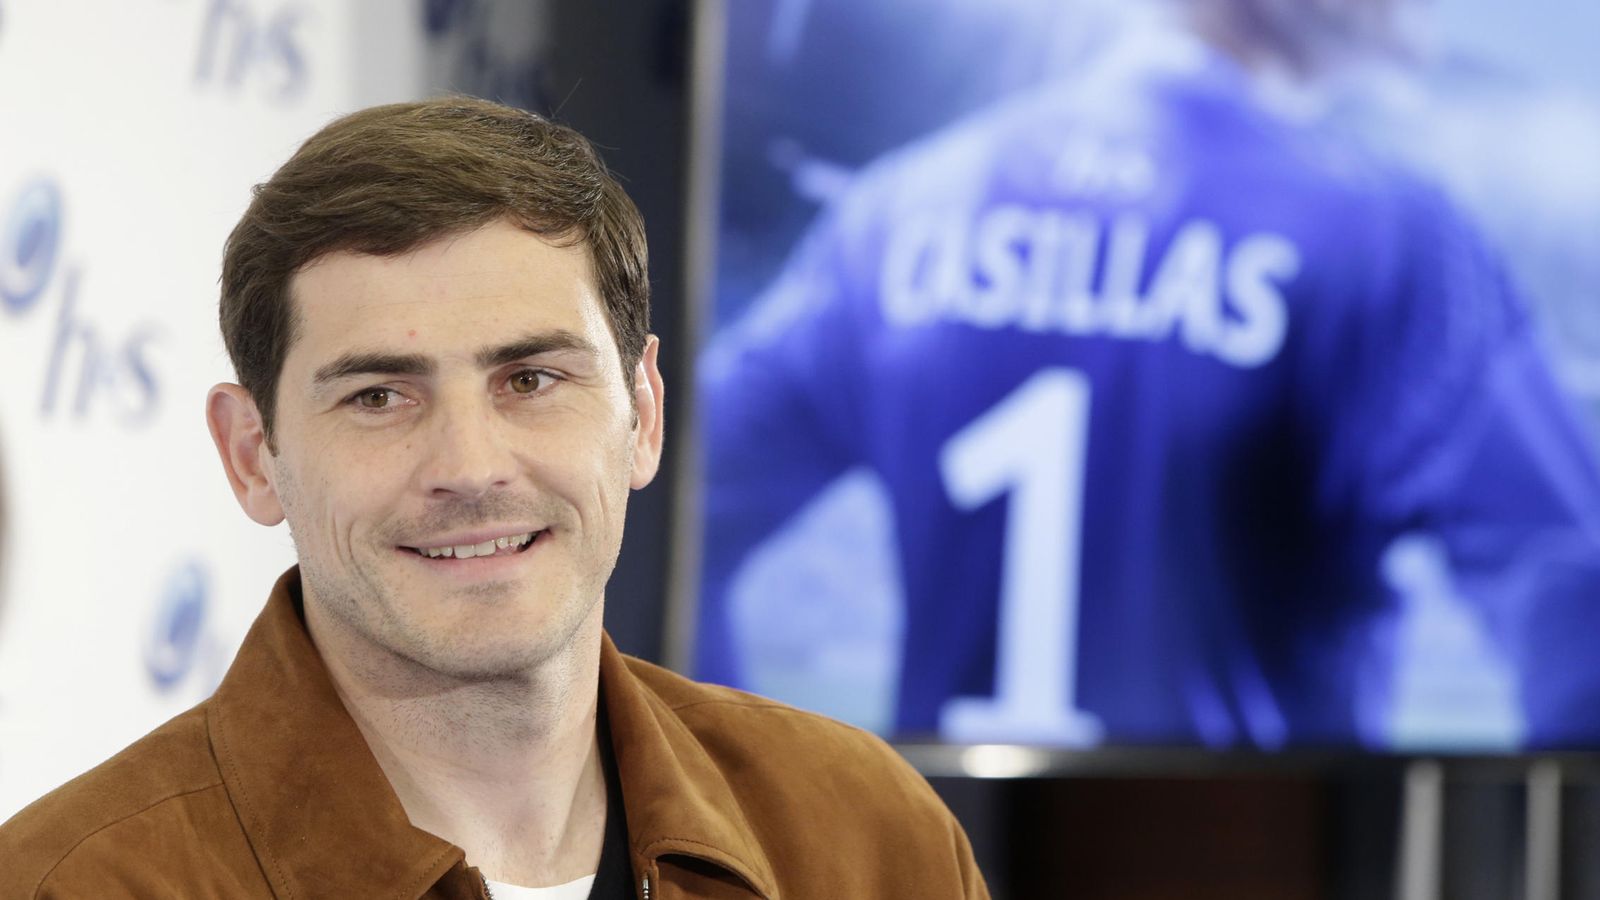 Foto: Iker Casillas durante el acto publicitario de este lunes (Gtres)